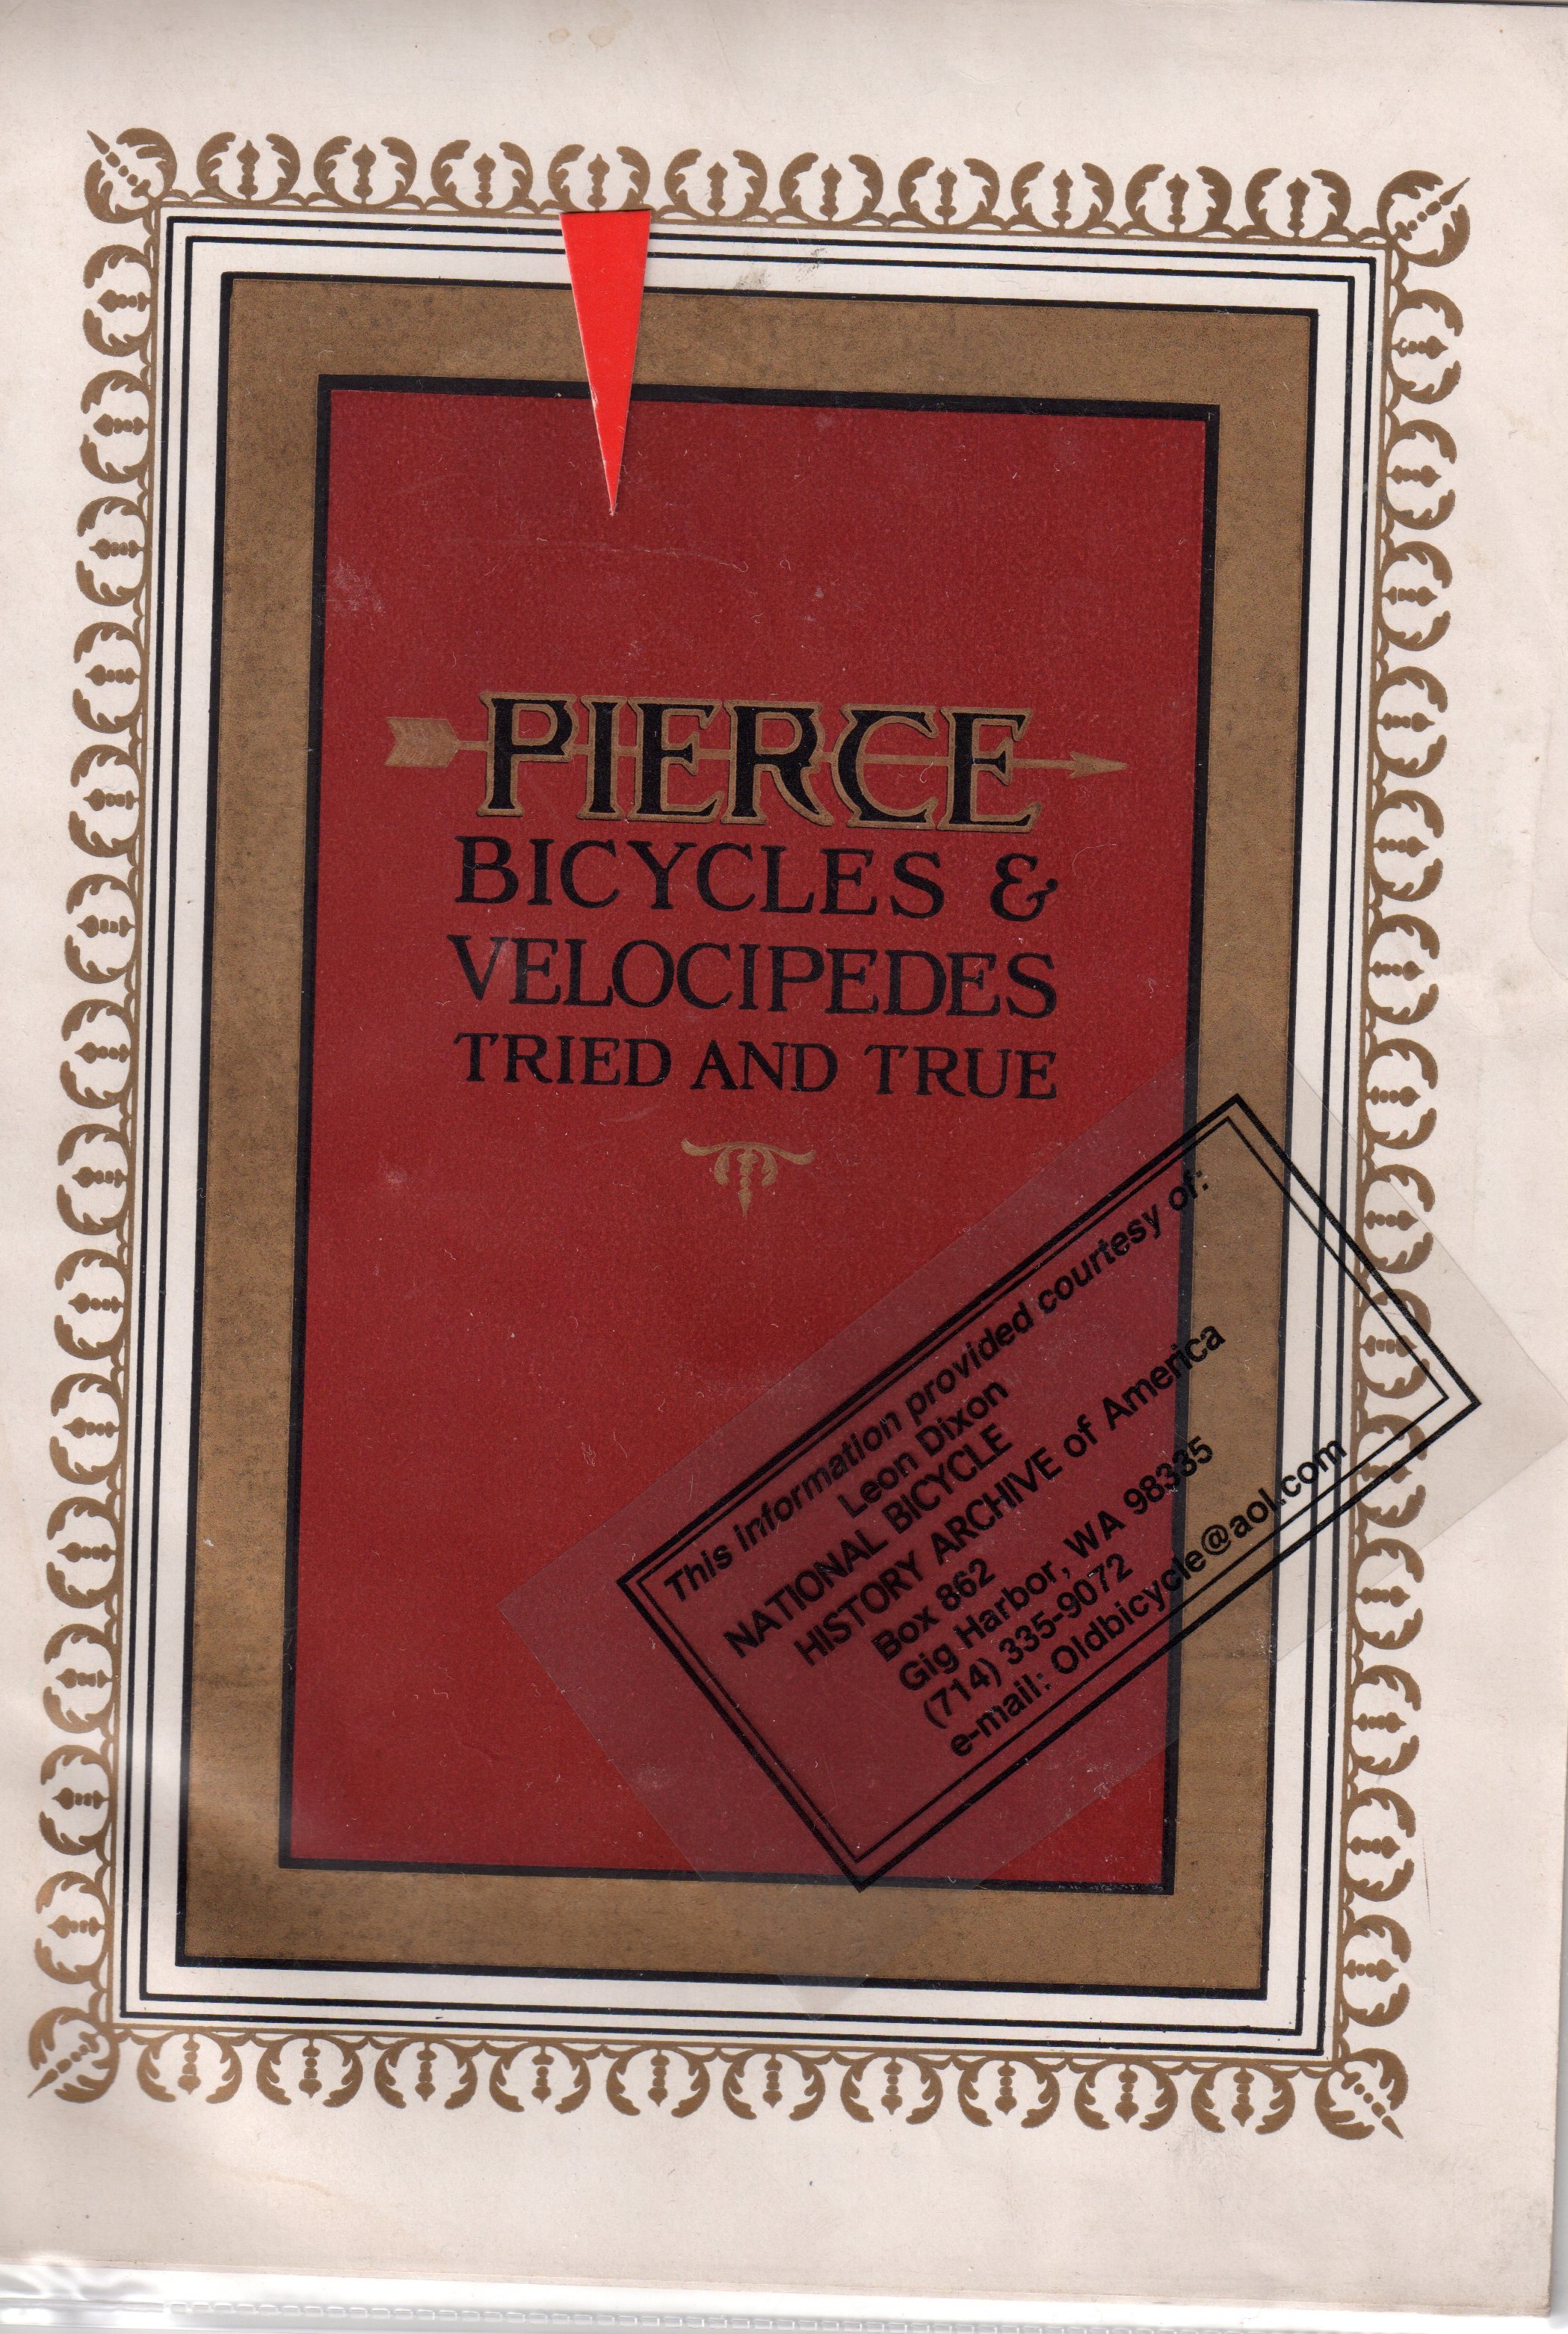 Pierce Bike